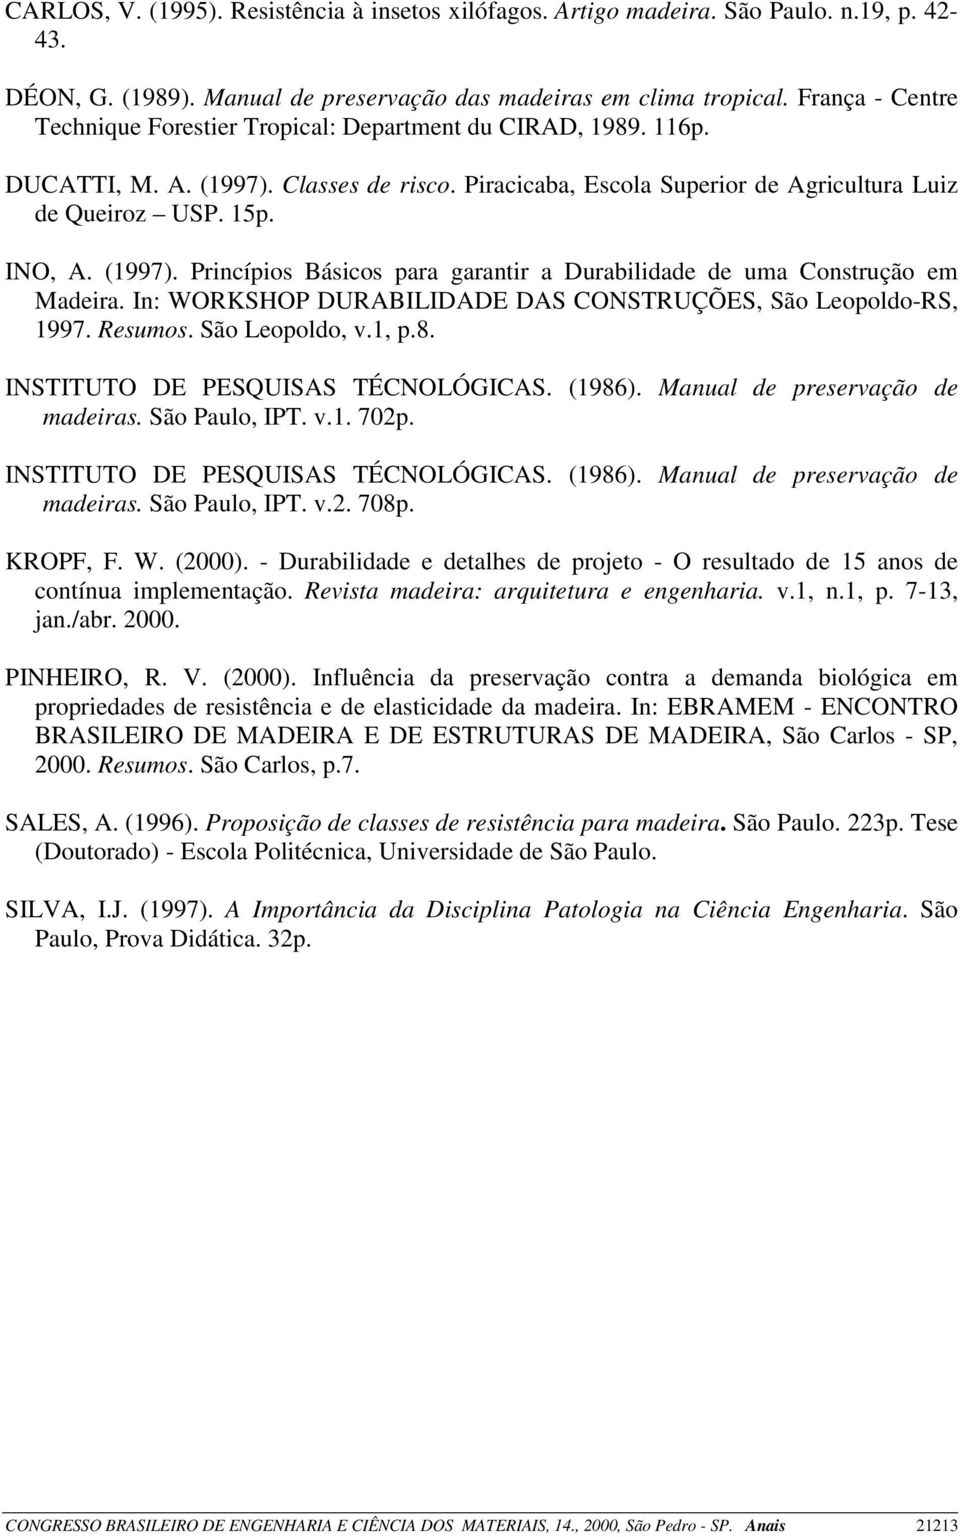 (1997). Princípios Básicos para garantir a Durabilidade de uma Construção em Madeira. In: WORKSHOP DURABILIDADE DAS CONSTRUÇÕES, São Leopoldo-RS, 1997. Resumos. São Leopoldo, v.1, p.8.